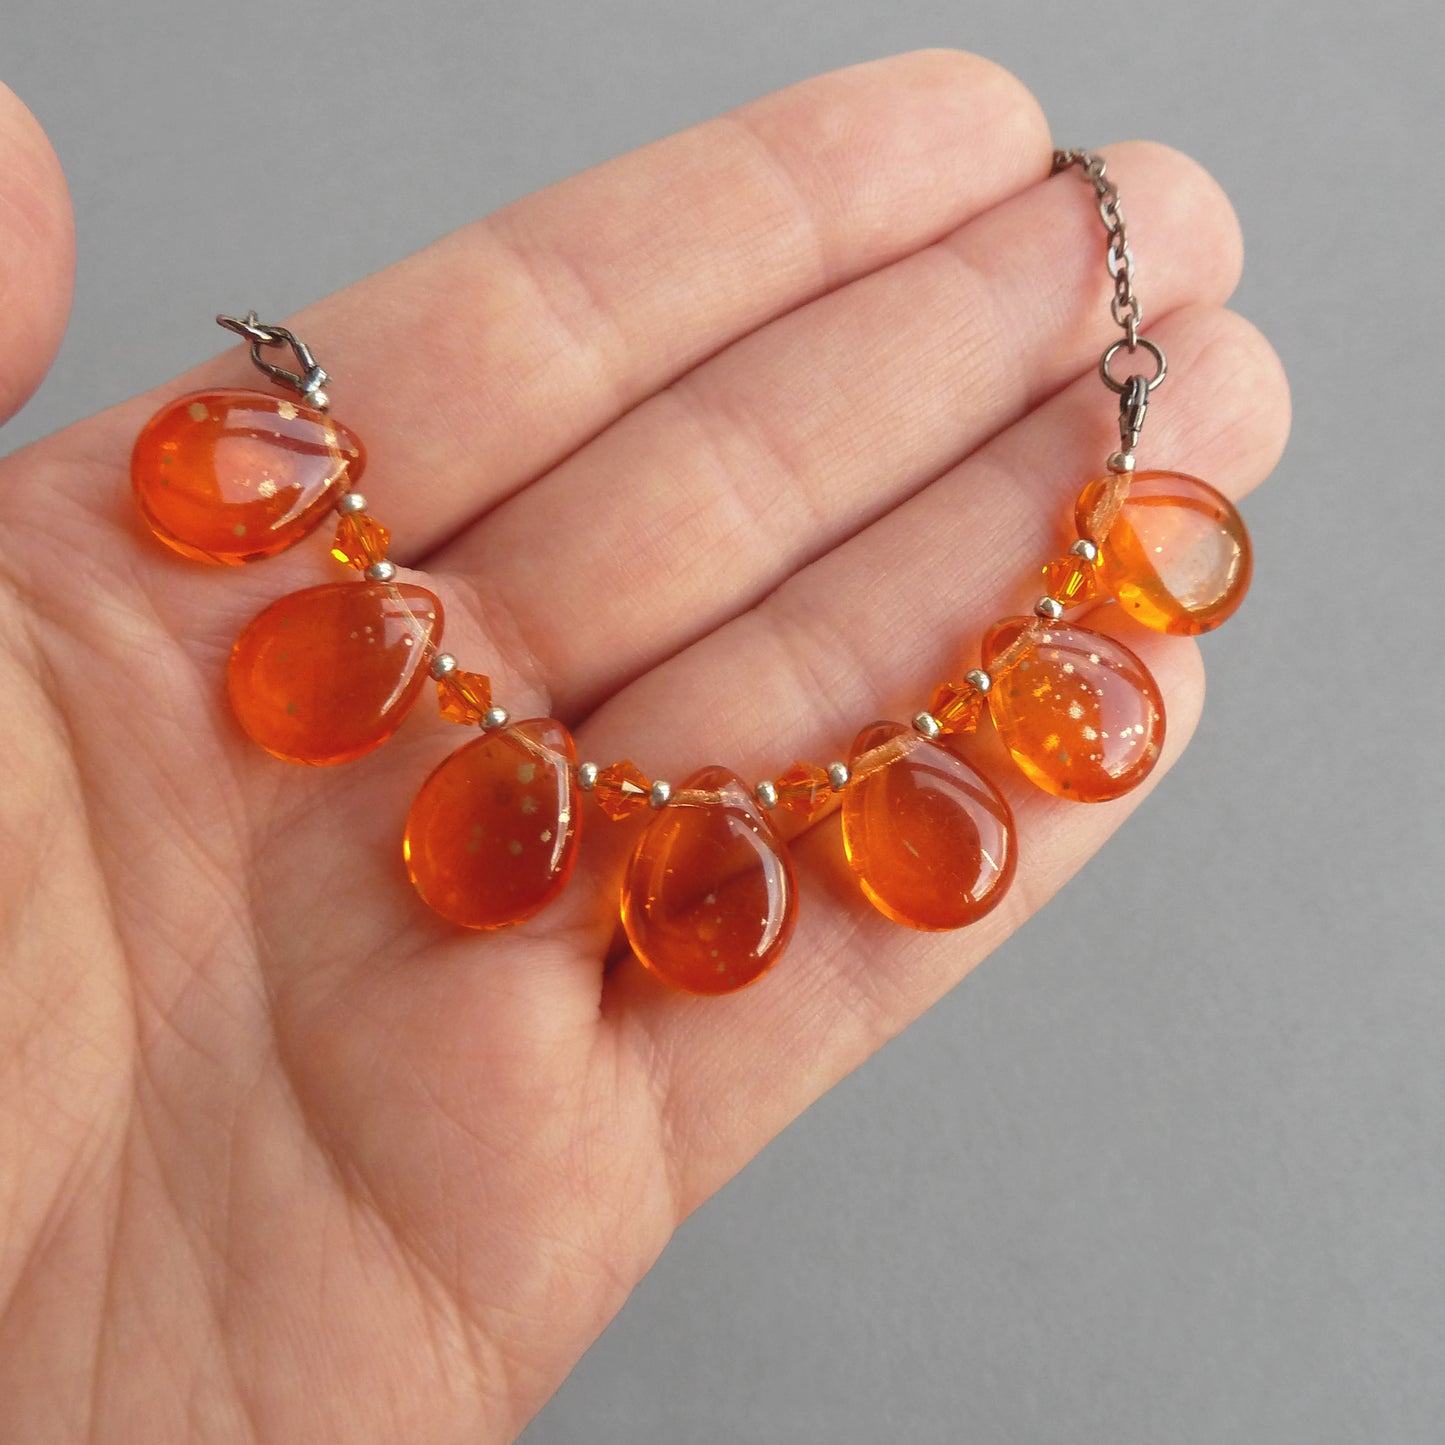 Bright orange teardrop necklaces